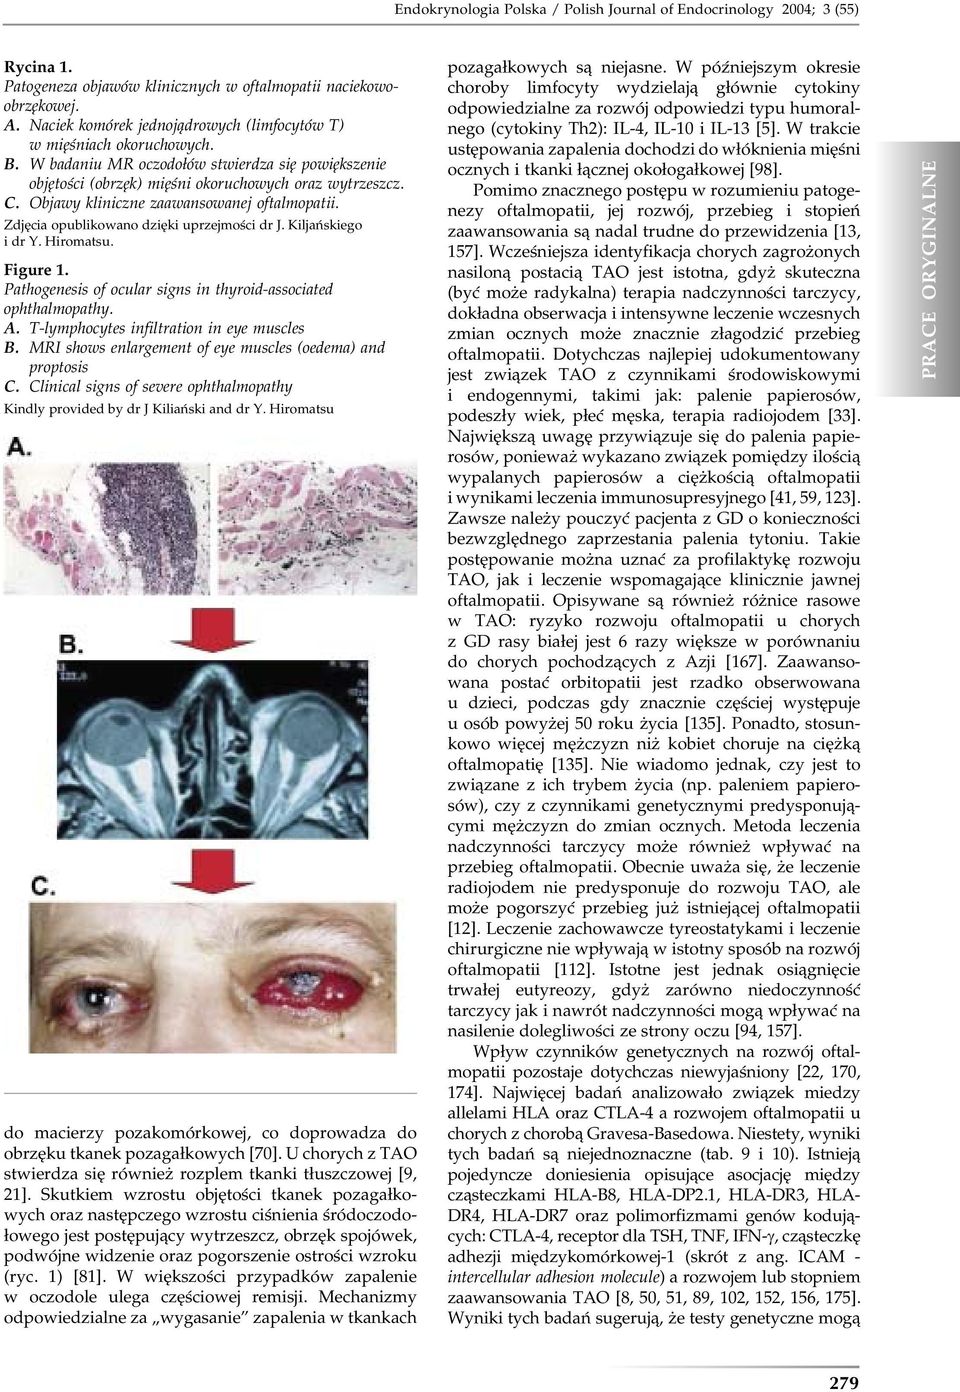 Objawy kliniczne zaawansowanej oftalmopatii. Zdjęcia opublikowano dzięki uprzejmości dr J. Kiljańskiego i dr Y. Hiromatsu. Figure 1. Pathogenesis of ocular signs in thyroid-associated ophthalmopathy.